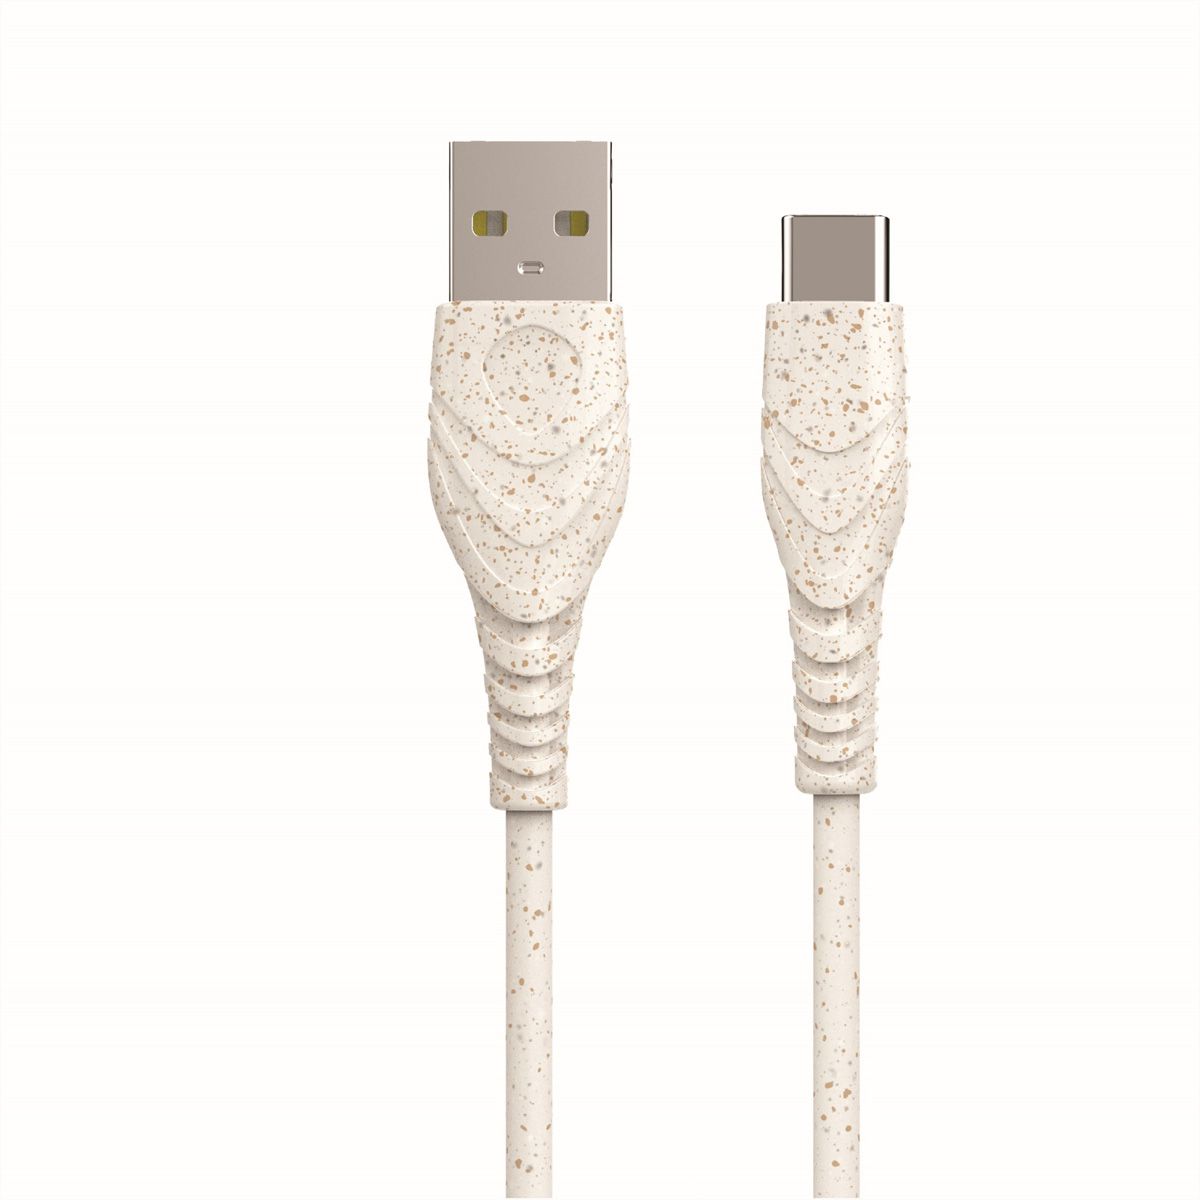 Câble de données - Connecteur USB Type C (USB-C) vers USB A (USB-A 2.0)